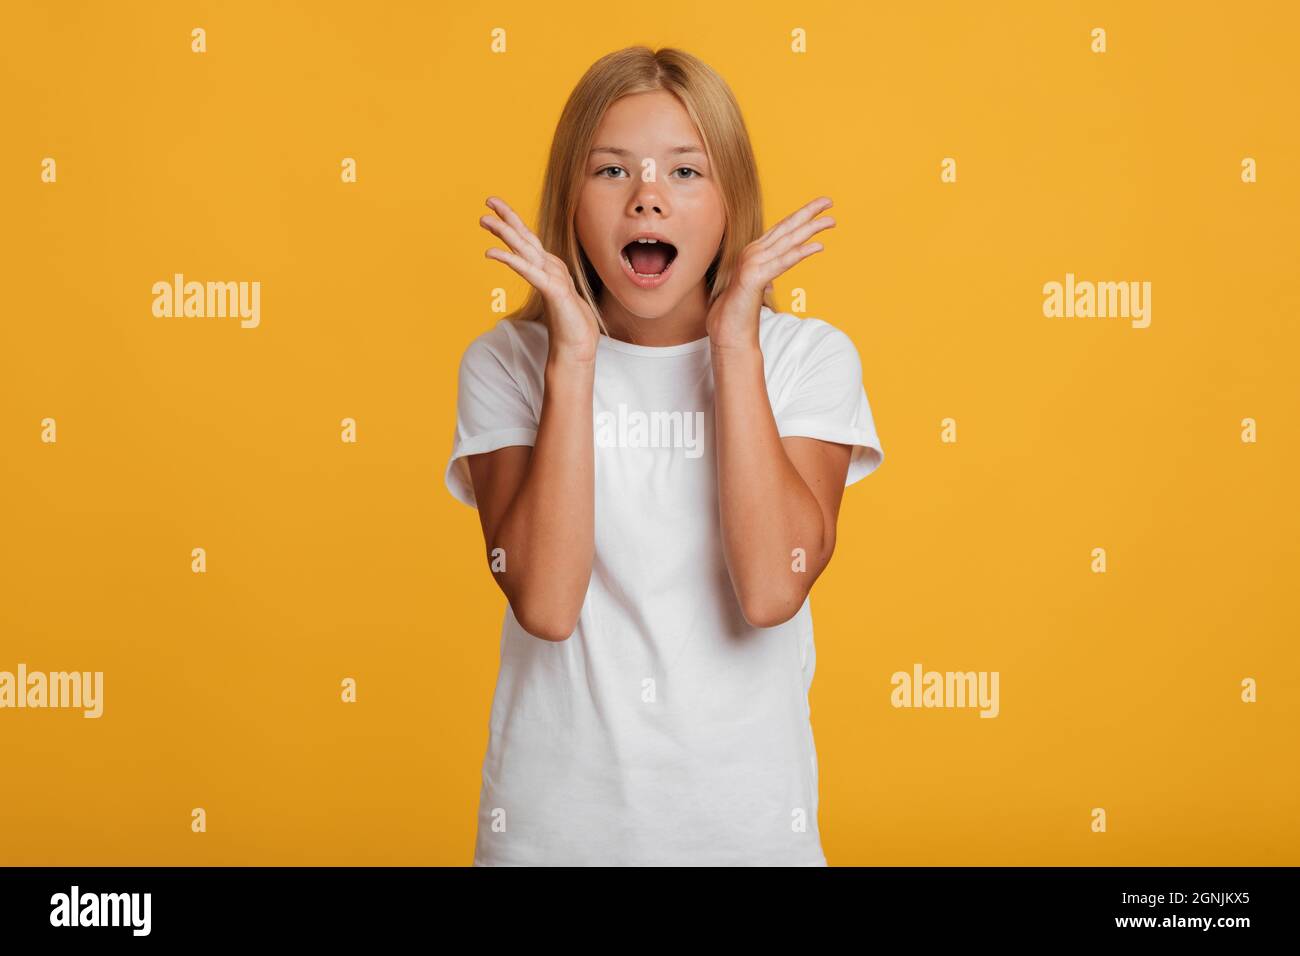 Spaventata sorpresa sorpresa scioccata ragazza europea adolescente in t-shirt bianca urlando a bocca aperta Foto Stock